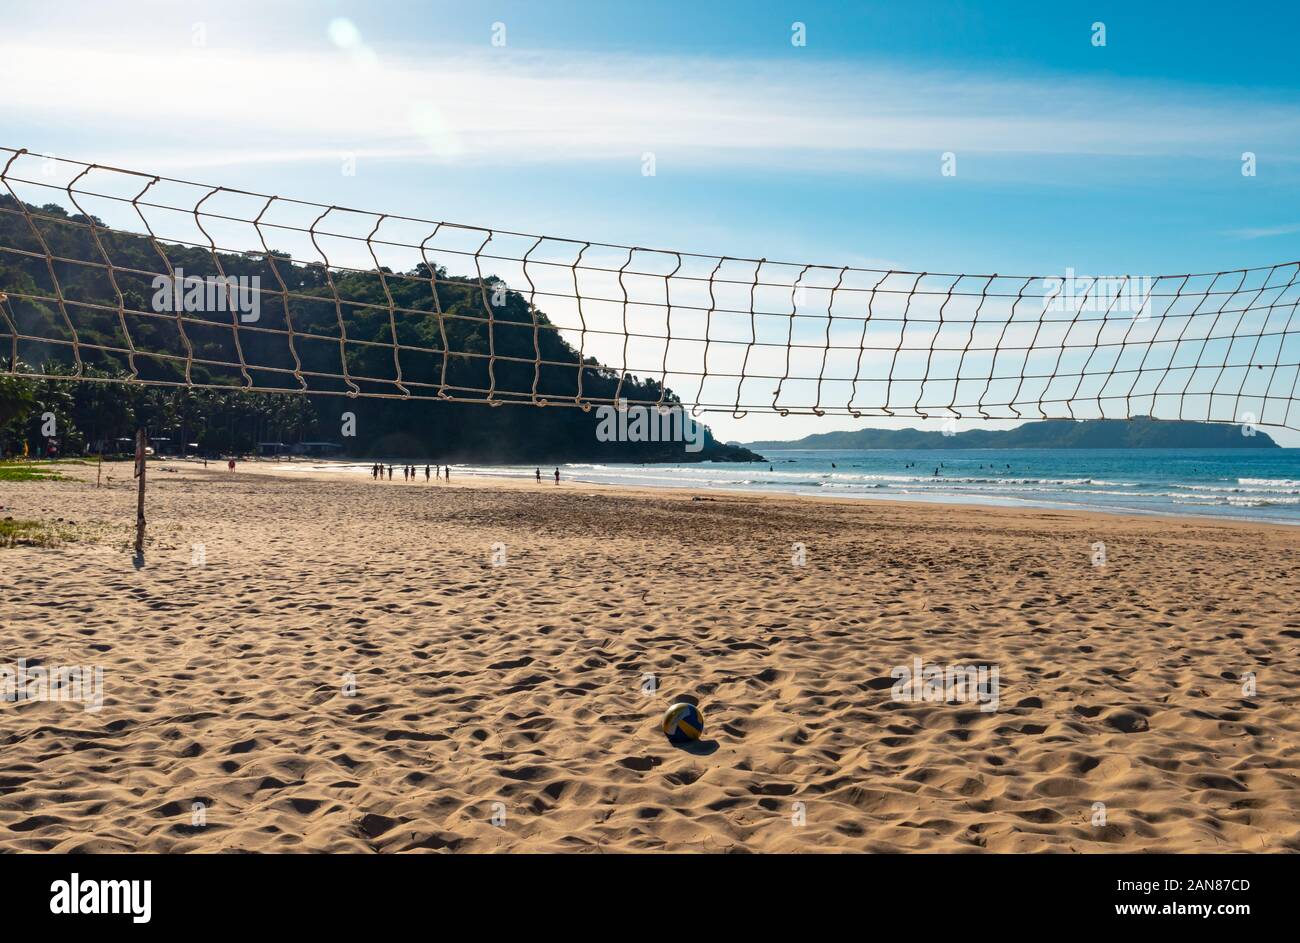 Le beach-volley. Balle de jeu en vertu de la lumière du soleil et ciel bleu avec filet de volley-ball Banque D'Images